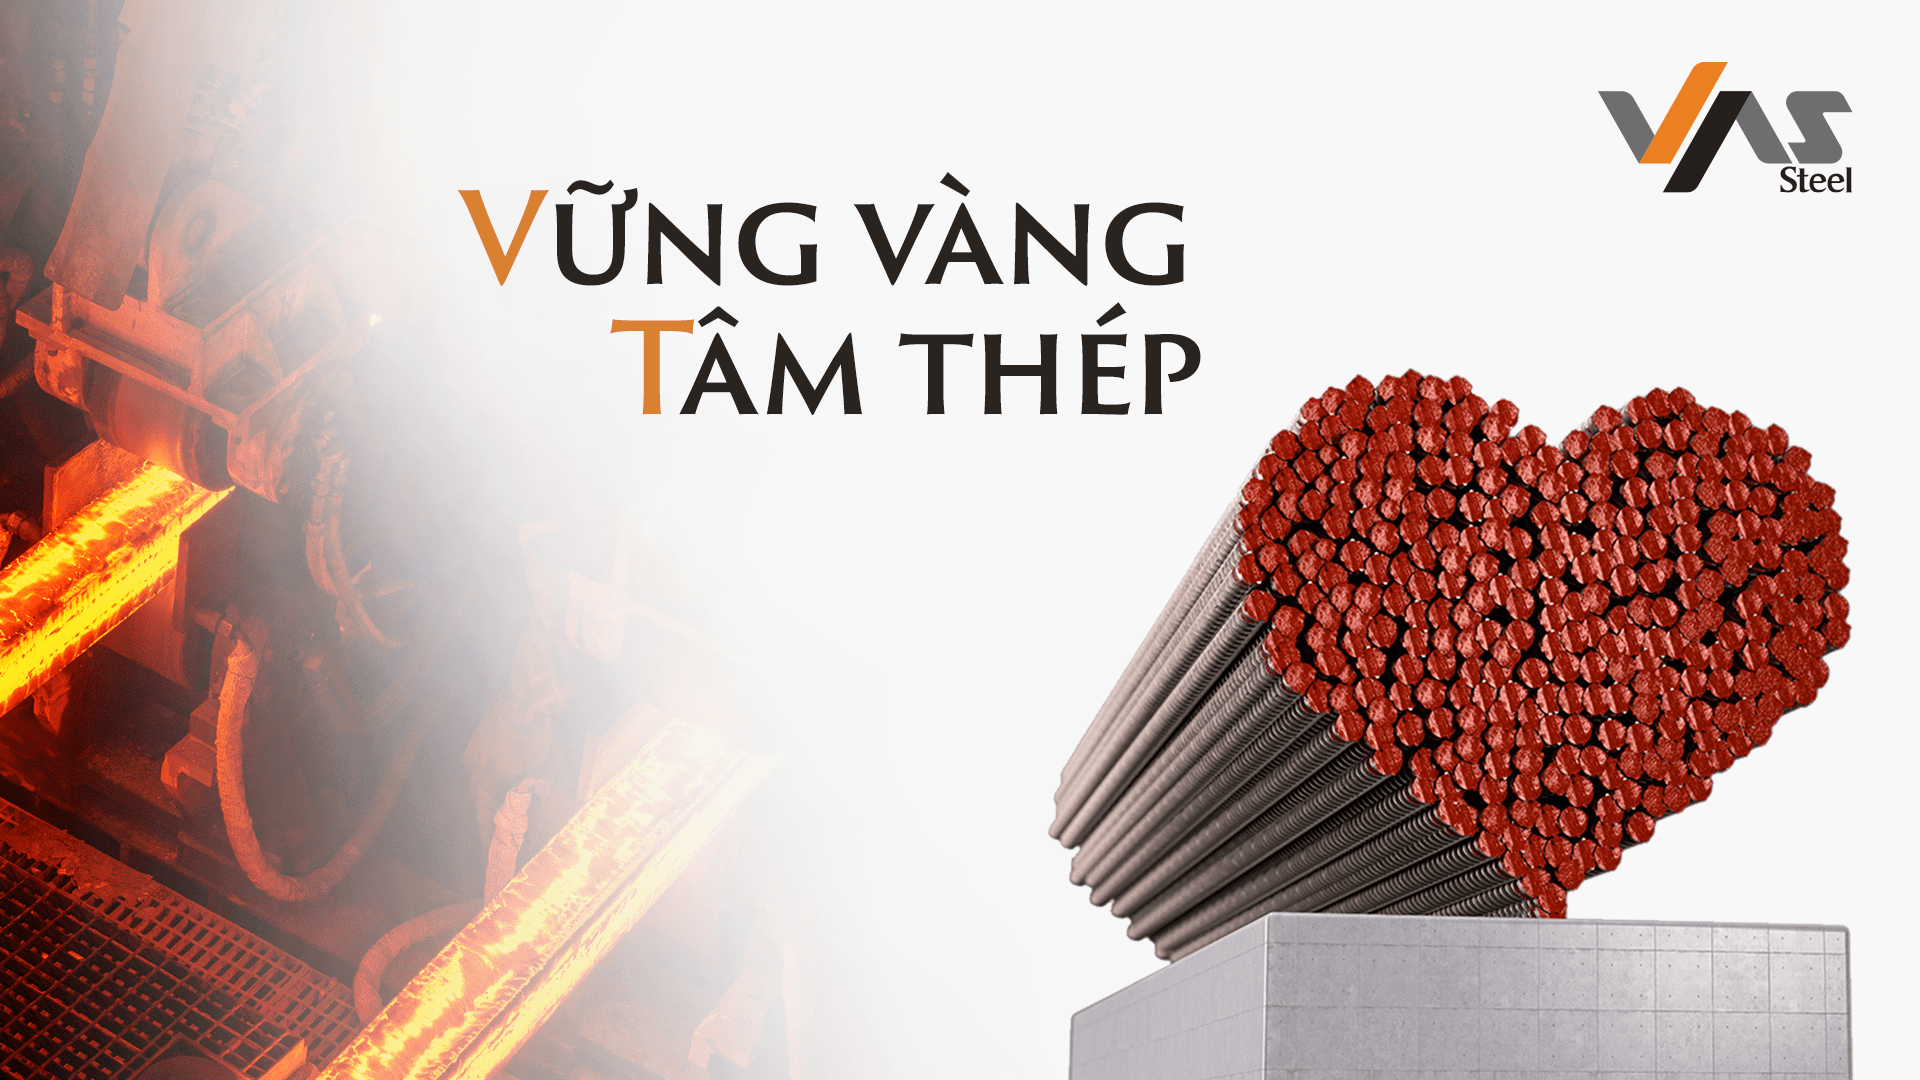 VAS Group “Vững vàng Tâm thép” thực hiện khát vọng đưa thương hiệu Việt ra biển lớn